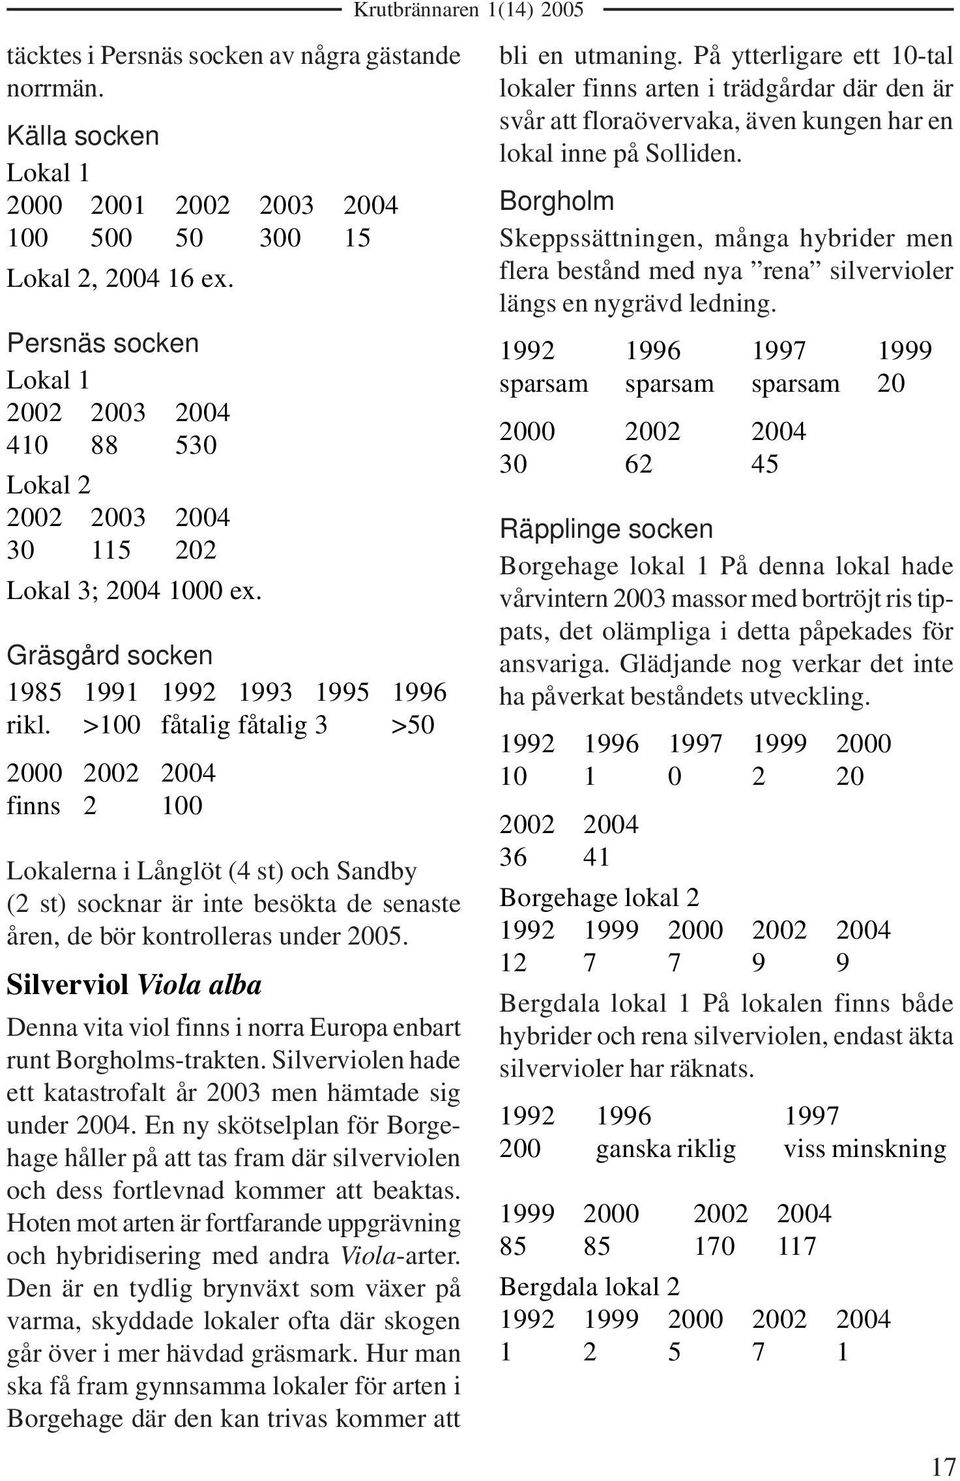 >100 fåtalig fåtalig 3 >50 2000 2002 2004 finns 2 100 Lokalerna i Långlöt (4 st) och Sandby (2 st) socknar är inte besökta de senaste åren, de bör kontrolleras under 2005.